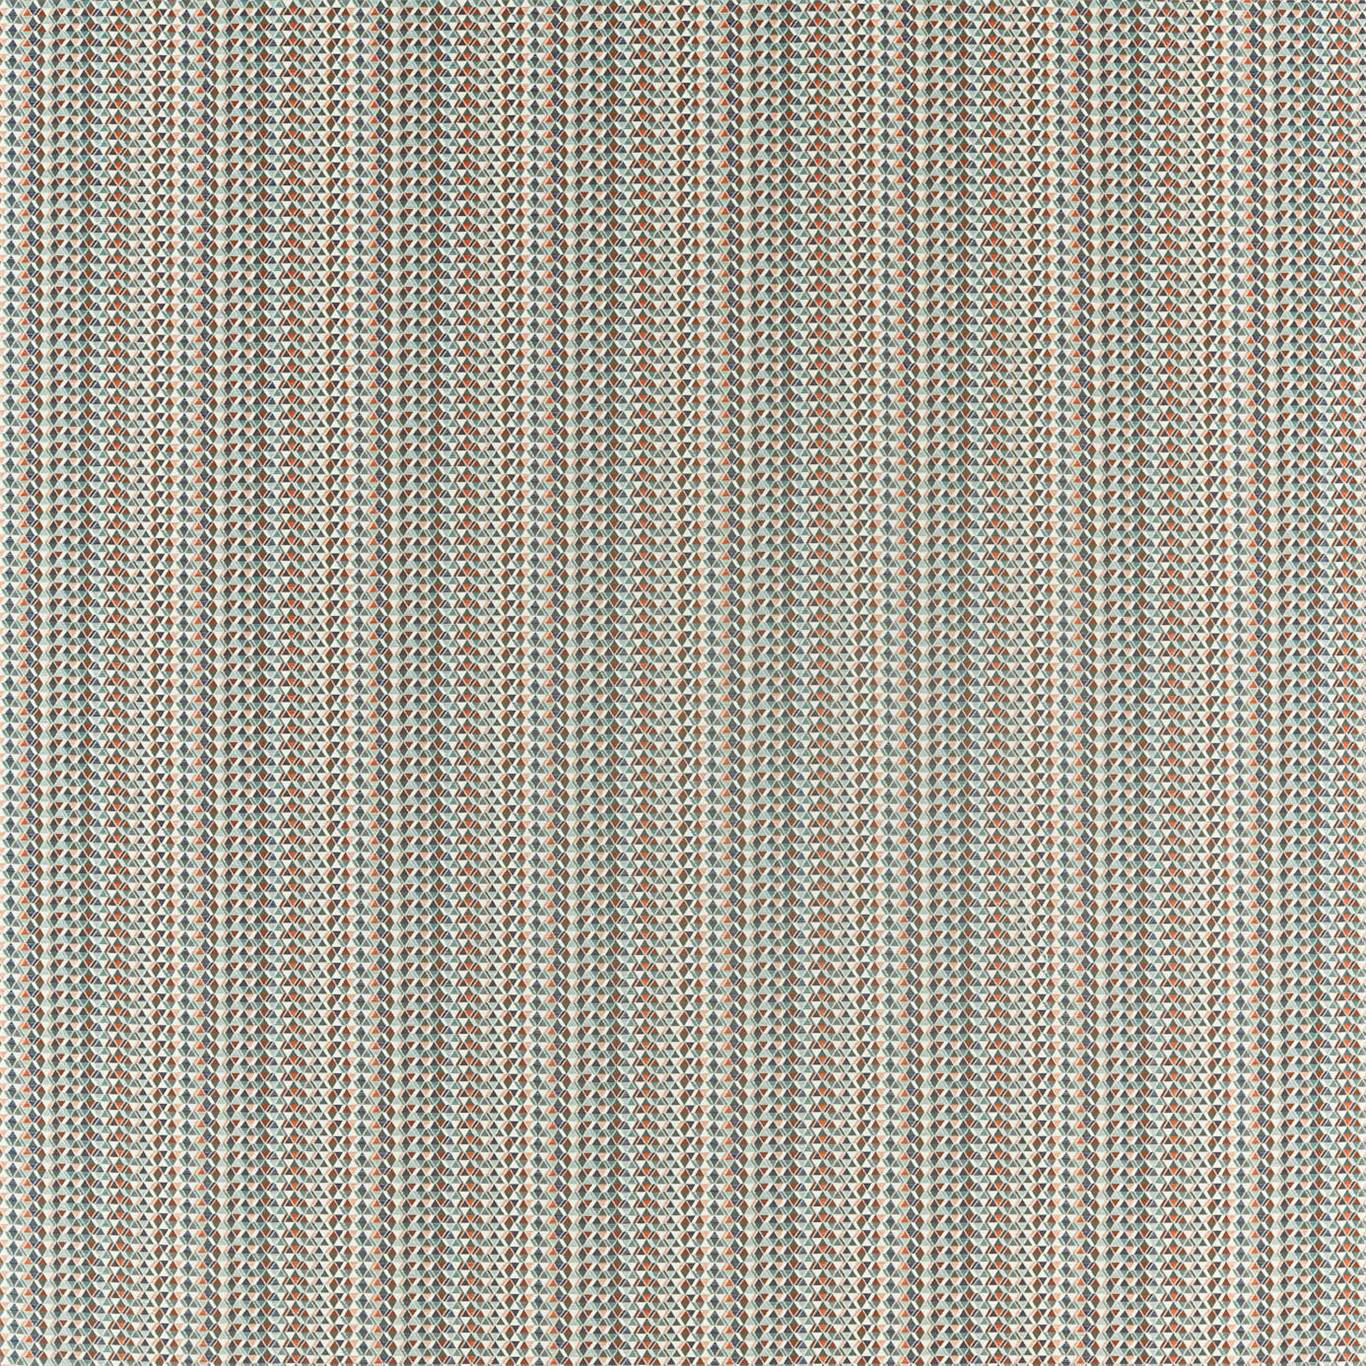 Concentric Fabric by Scion - NZAC132920 - Pimento